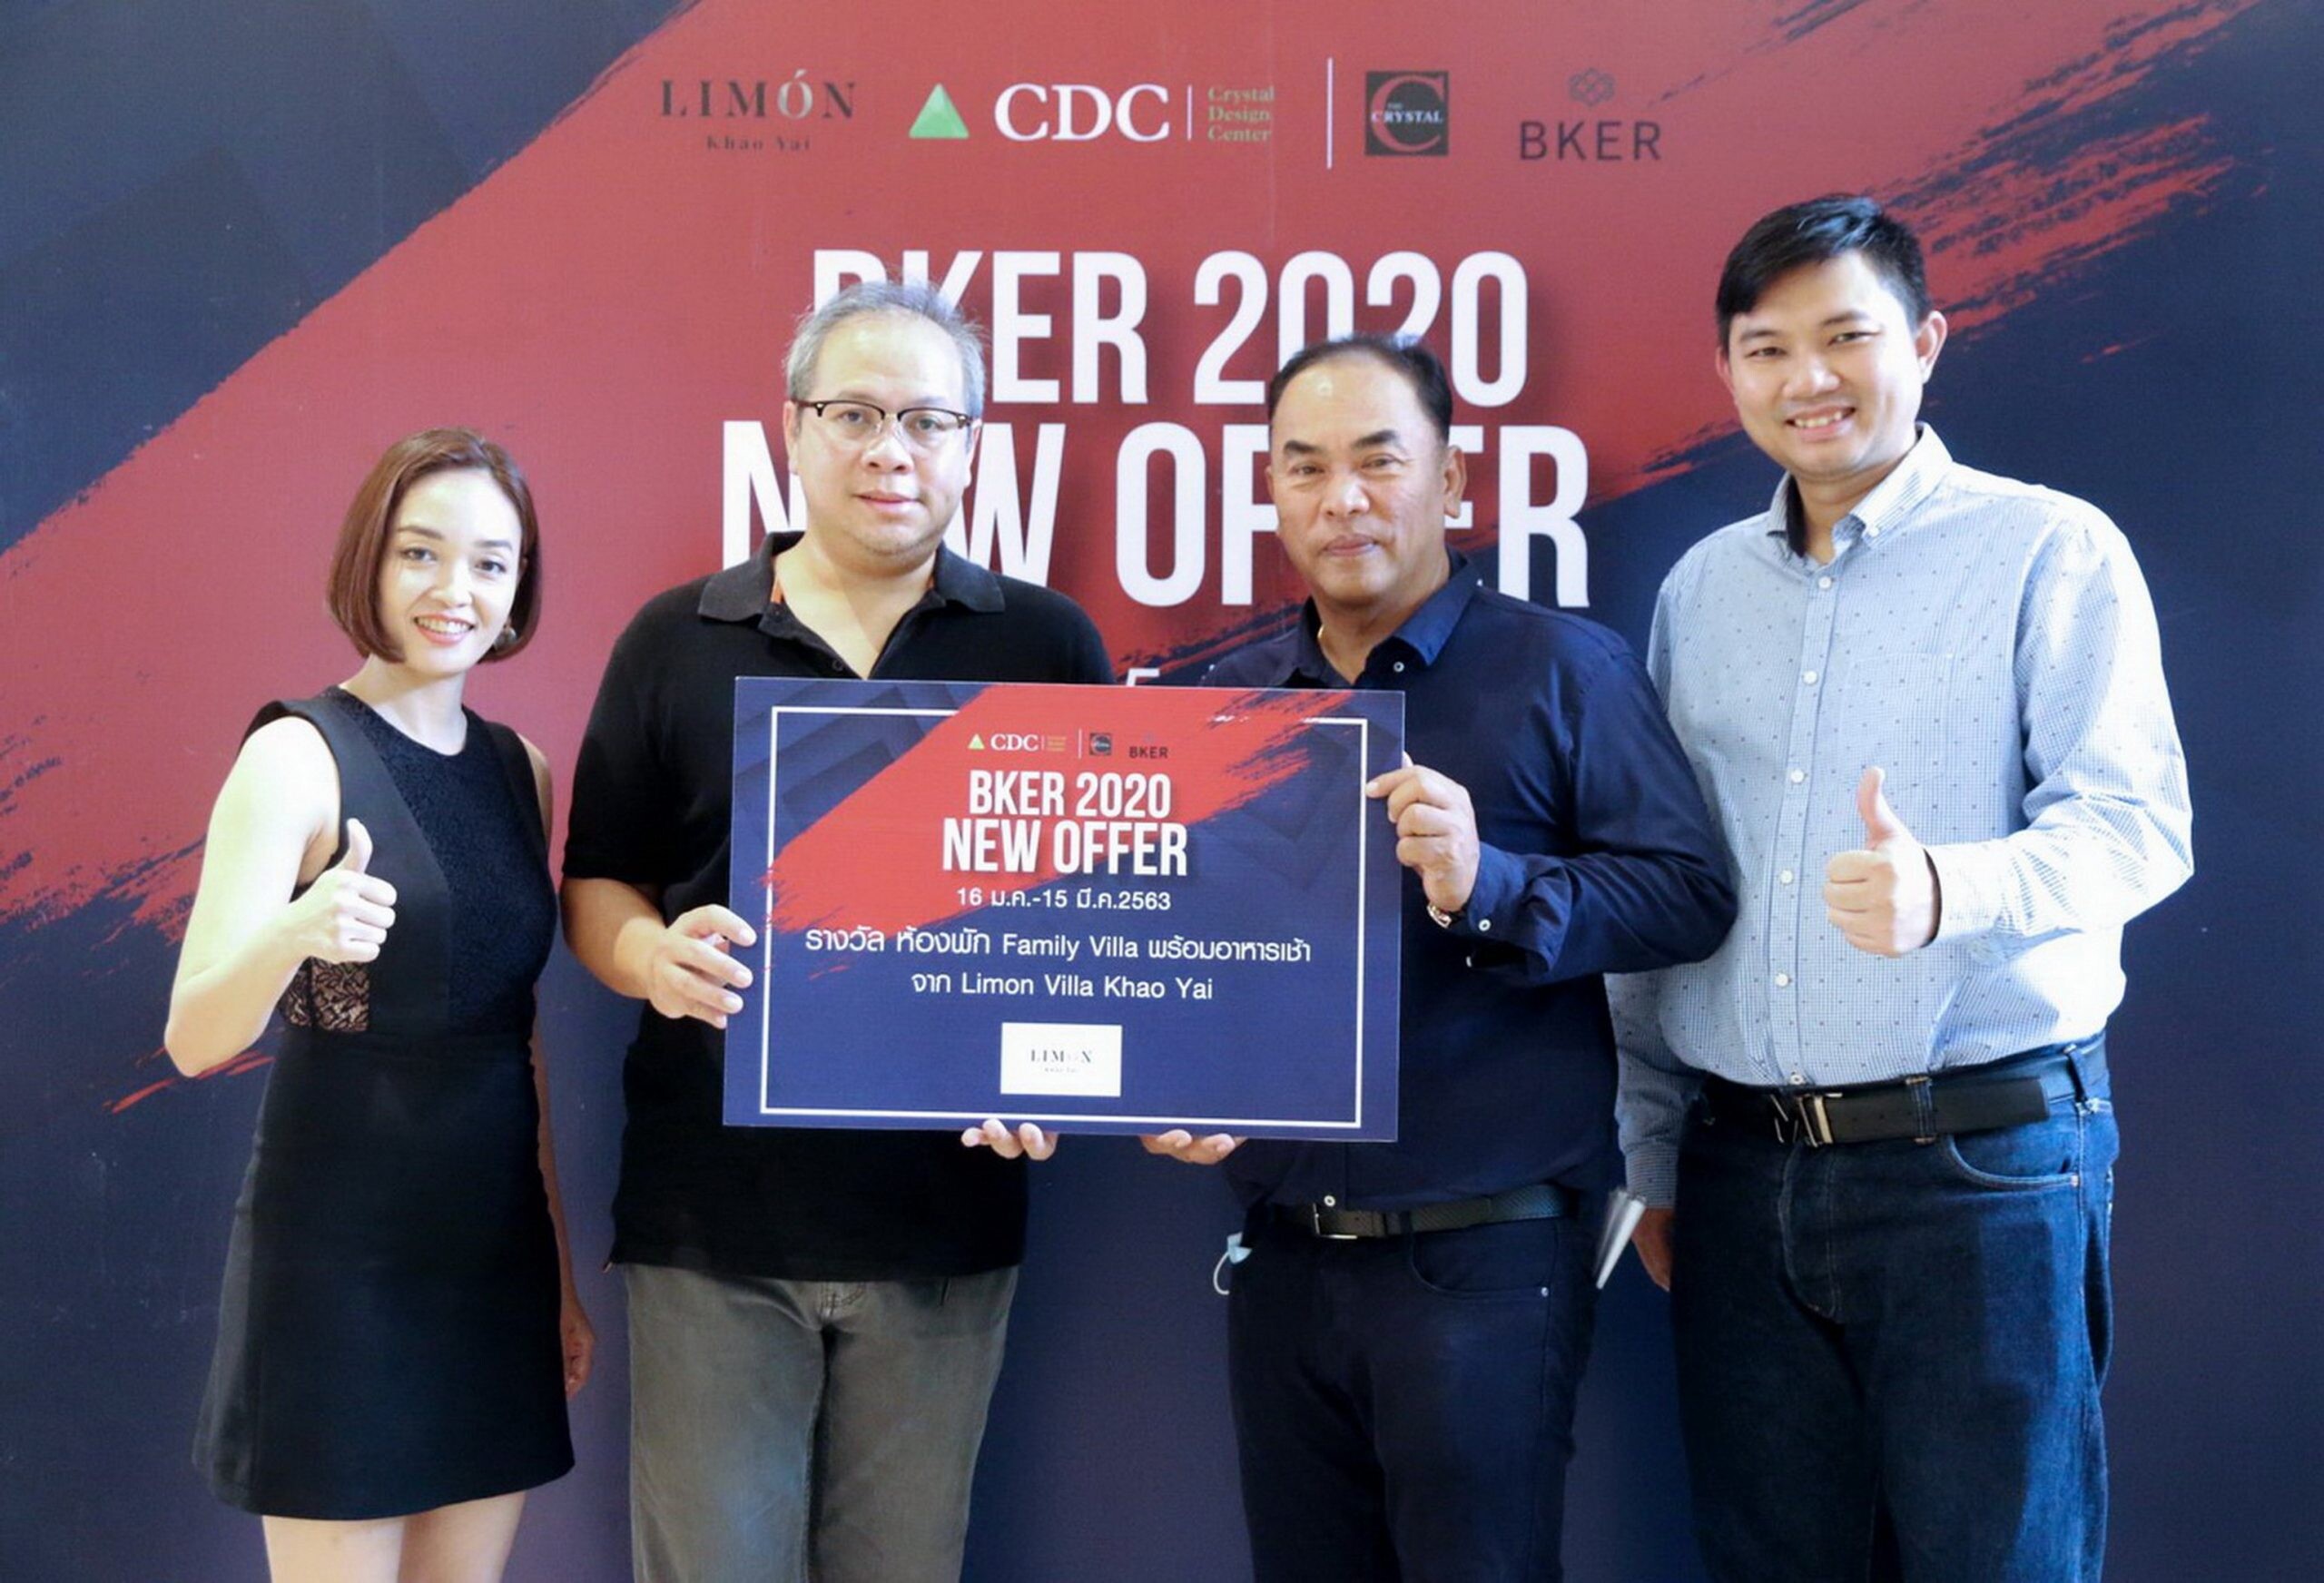 ภาพข่าว : บริษัท เคอี กรุ๊ป จัดกิจกรรมมอบรางวัลในแคมเปญ “BKER 2020 NEW OFFER”